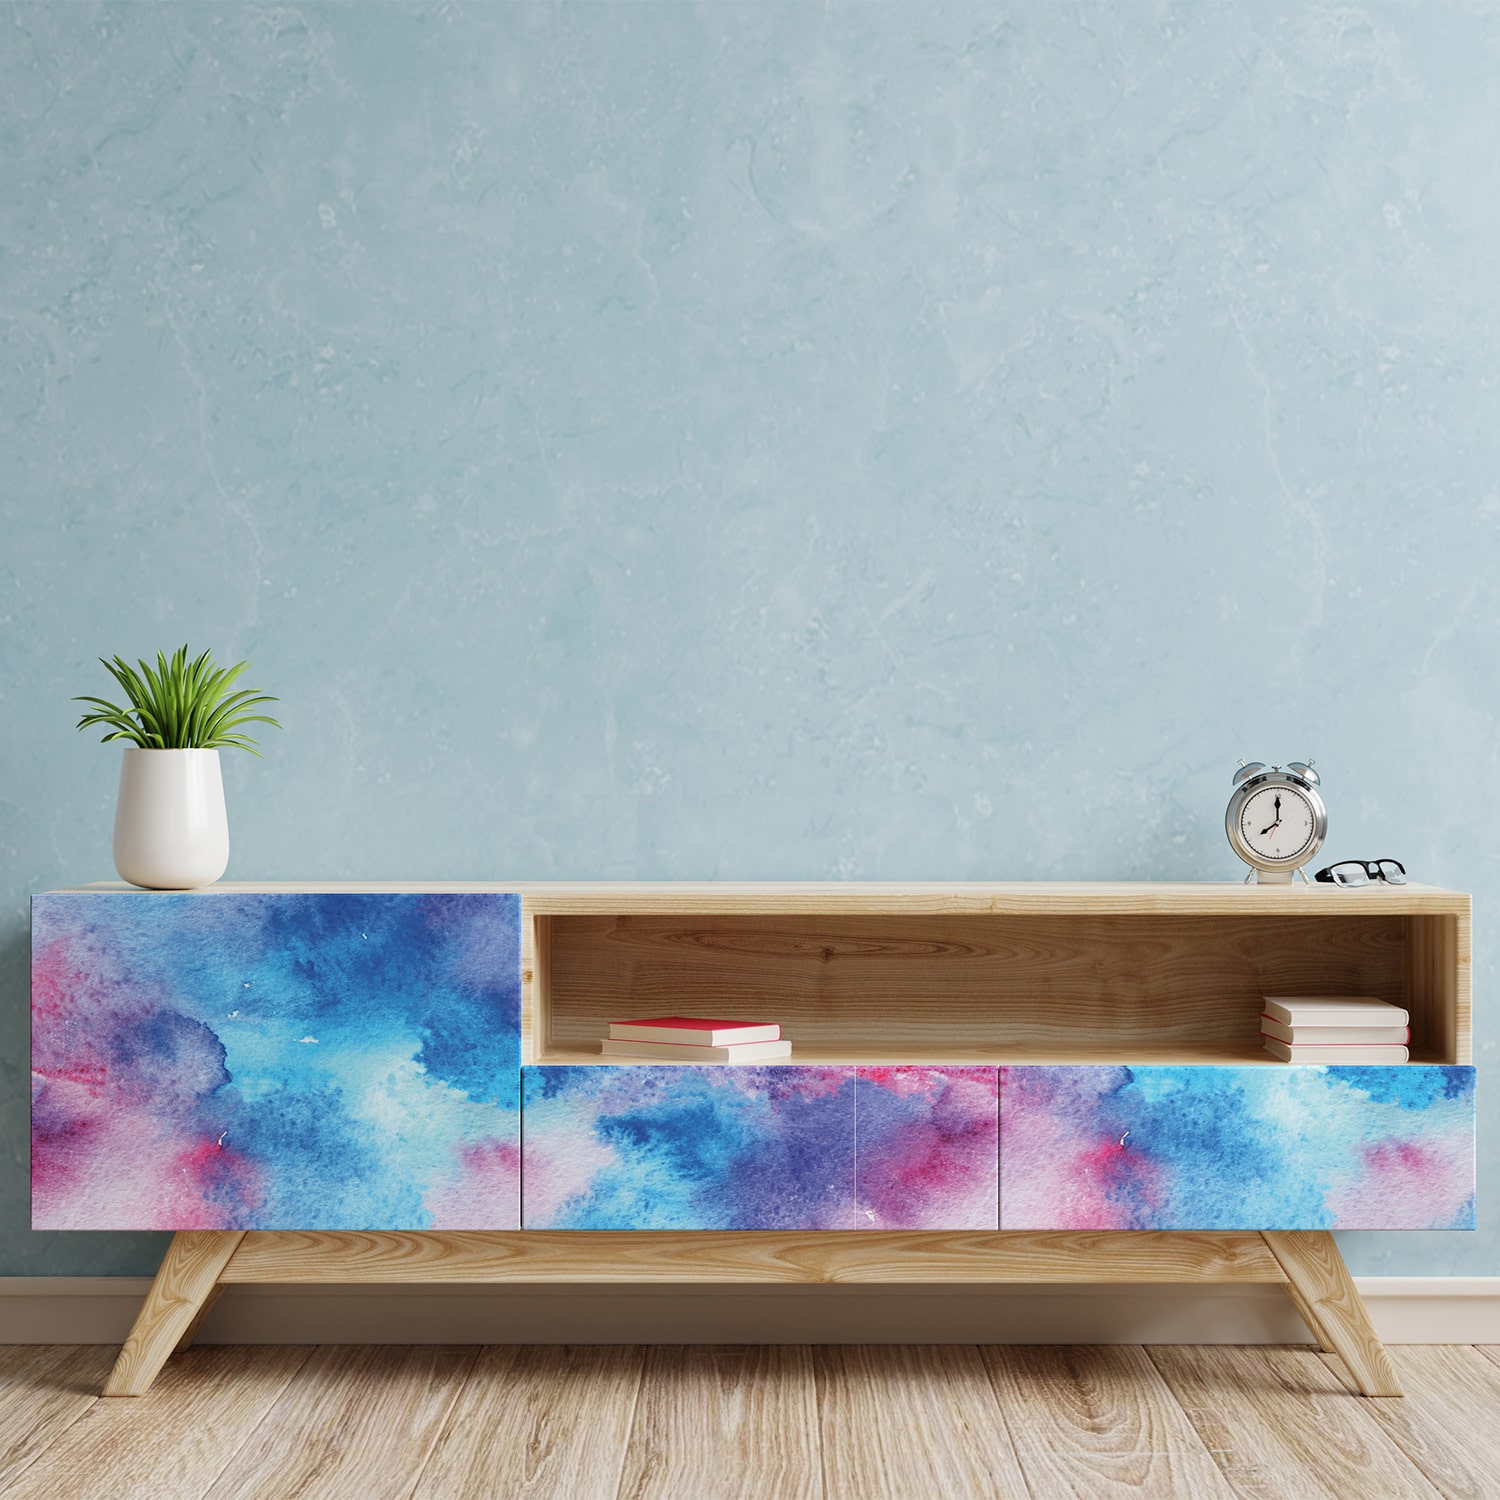 PP70-meuble-papier-peint-adhesif-decoratif-revetement-vinyle-motifs-aquarelle-dégradé-bleu-et-rose-renovation-meuble-mur-min